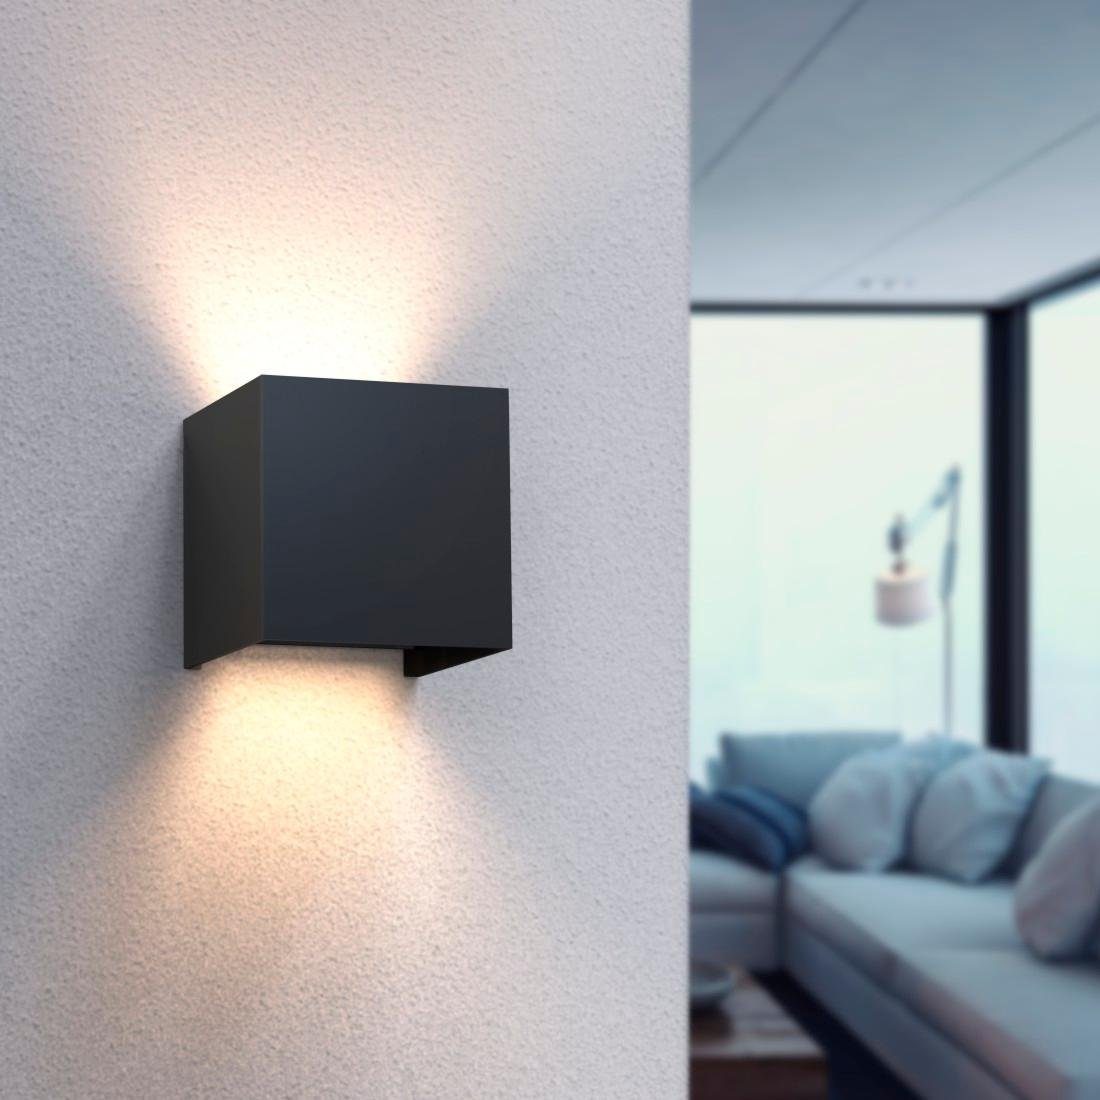 Hama LED Wandleuchte Warmweiß, von/durch: 44, Wandleuchte, innen/außen Amazon LED Wandlampe Dimmer, Lizenziert für Farbwechsel, WLAN IP schwarz Tageslichtweiß, Außenlampe Smart Home